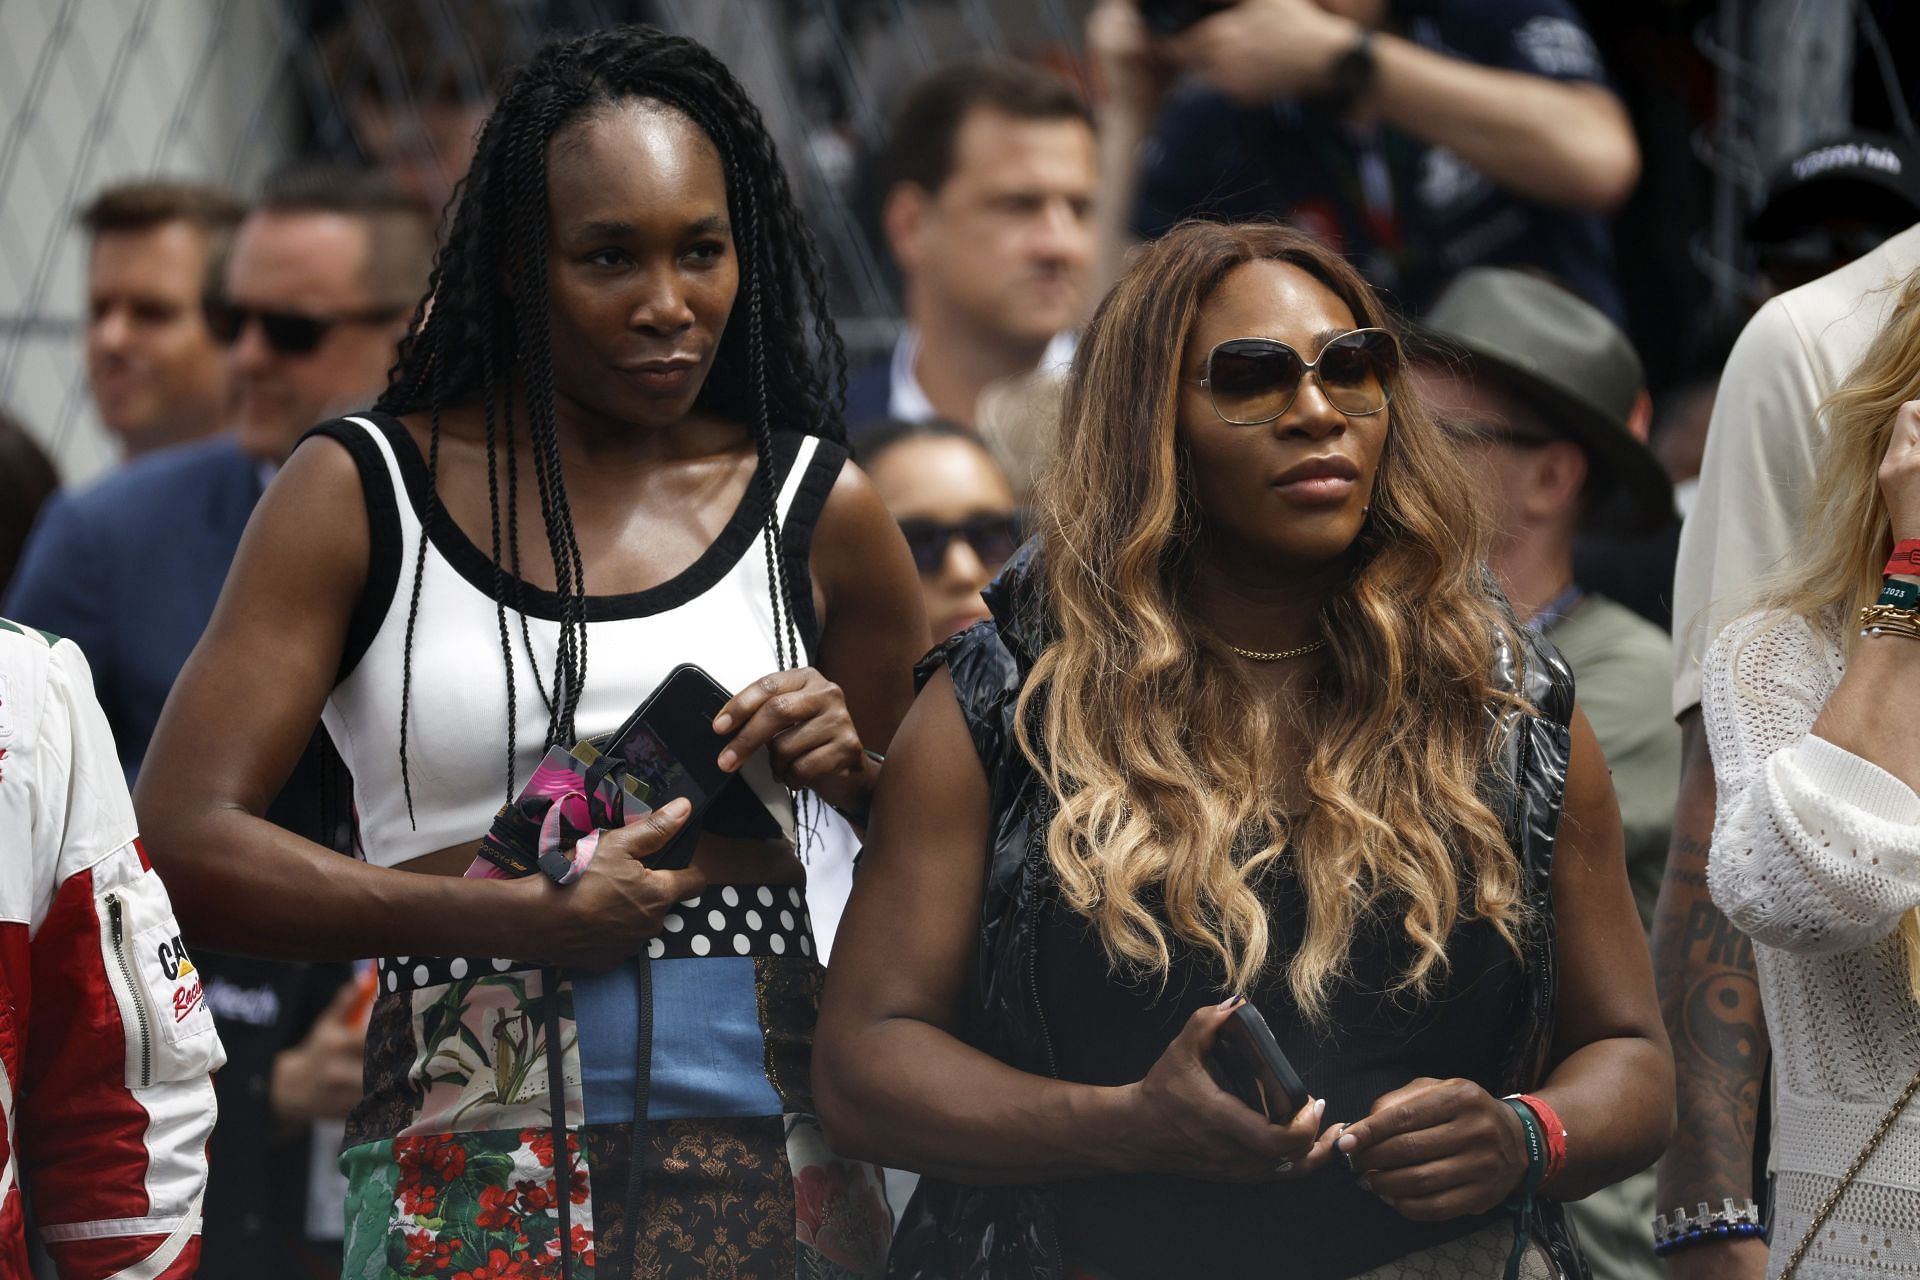 Venus Williams and Serena Williams in Miami.